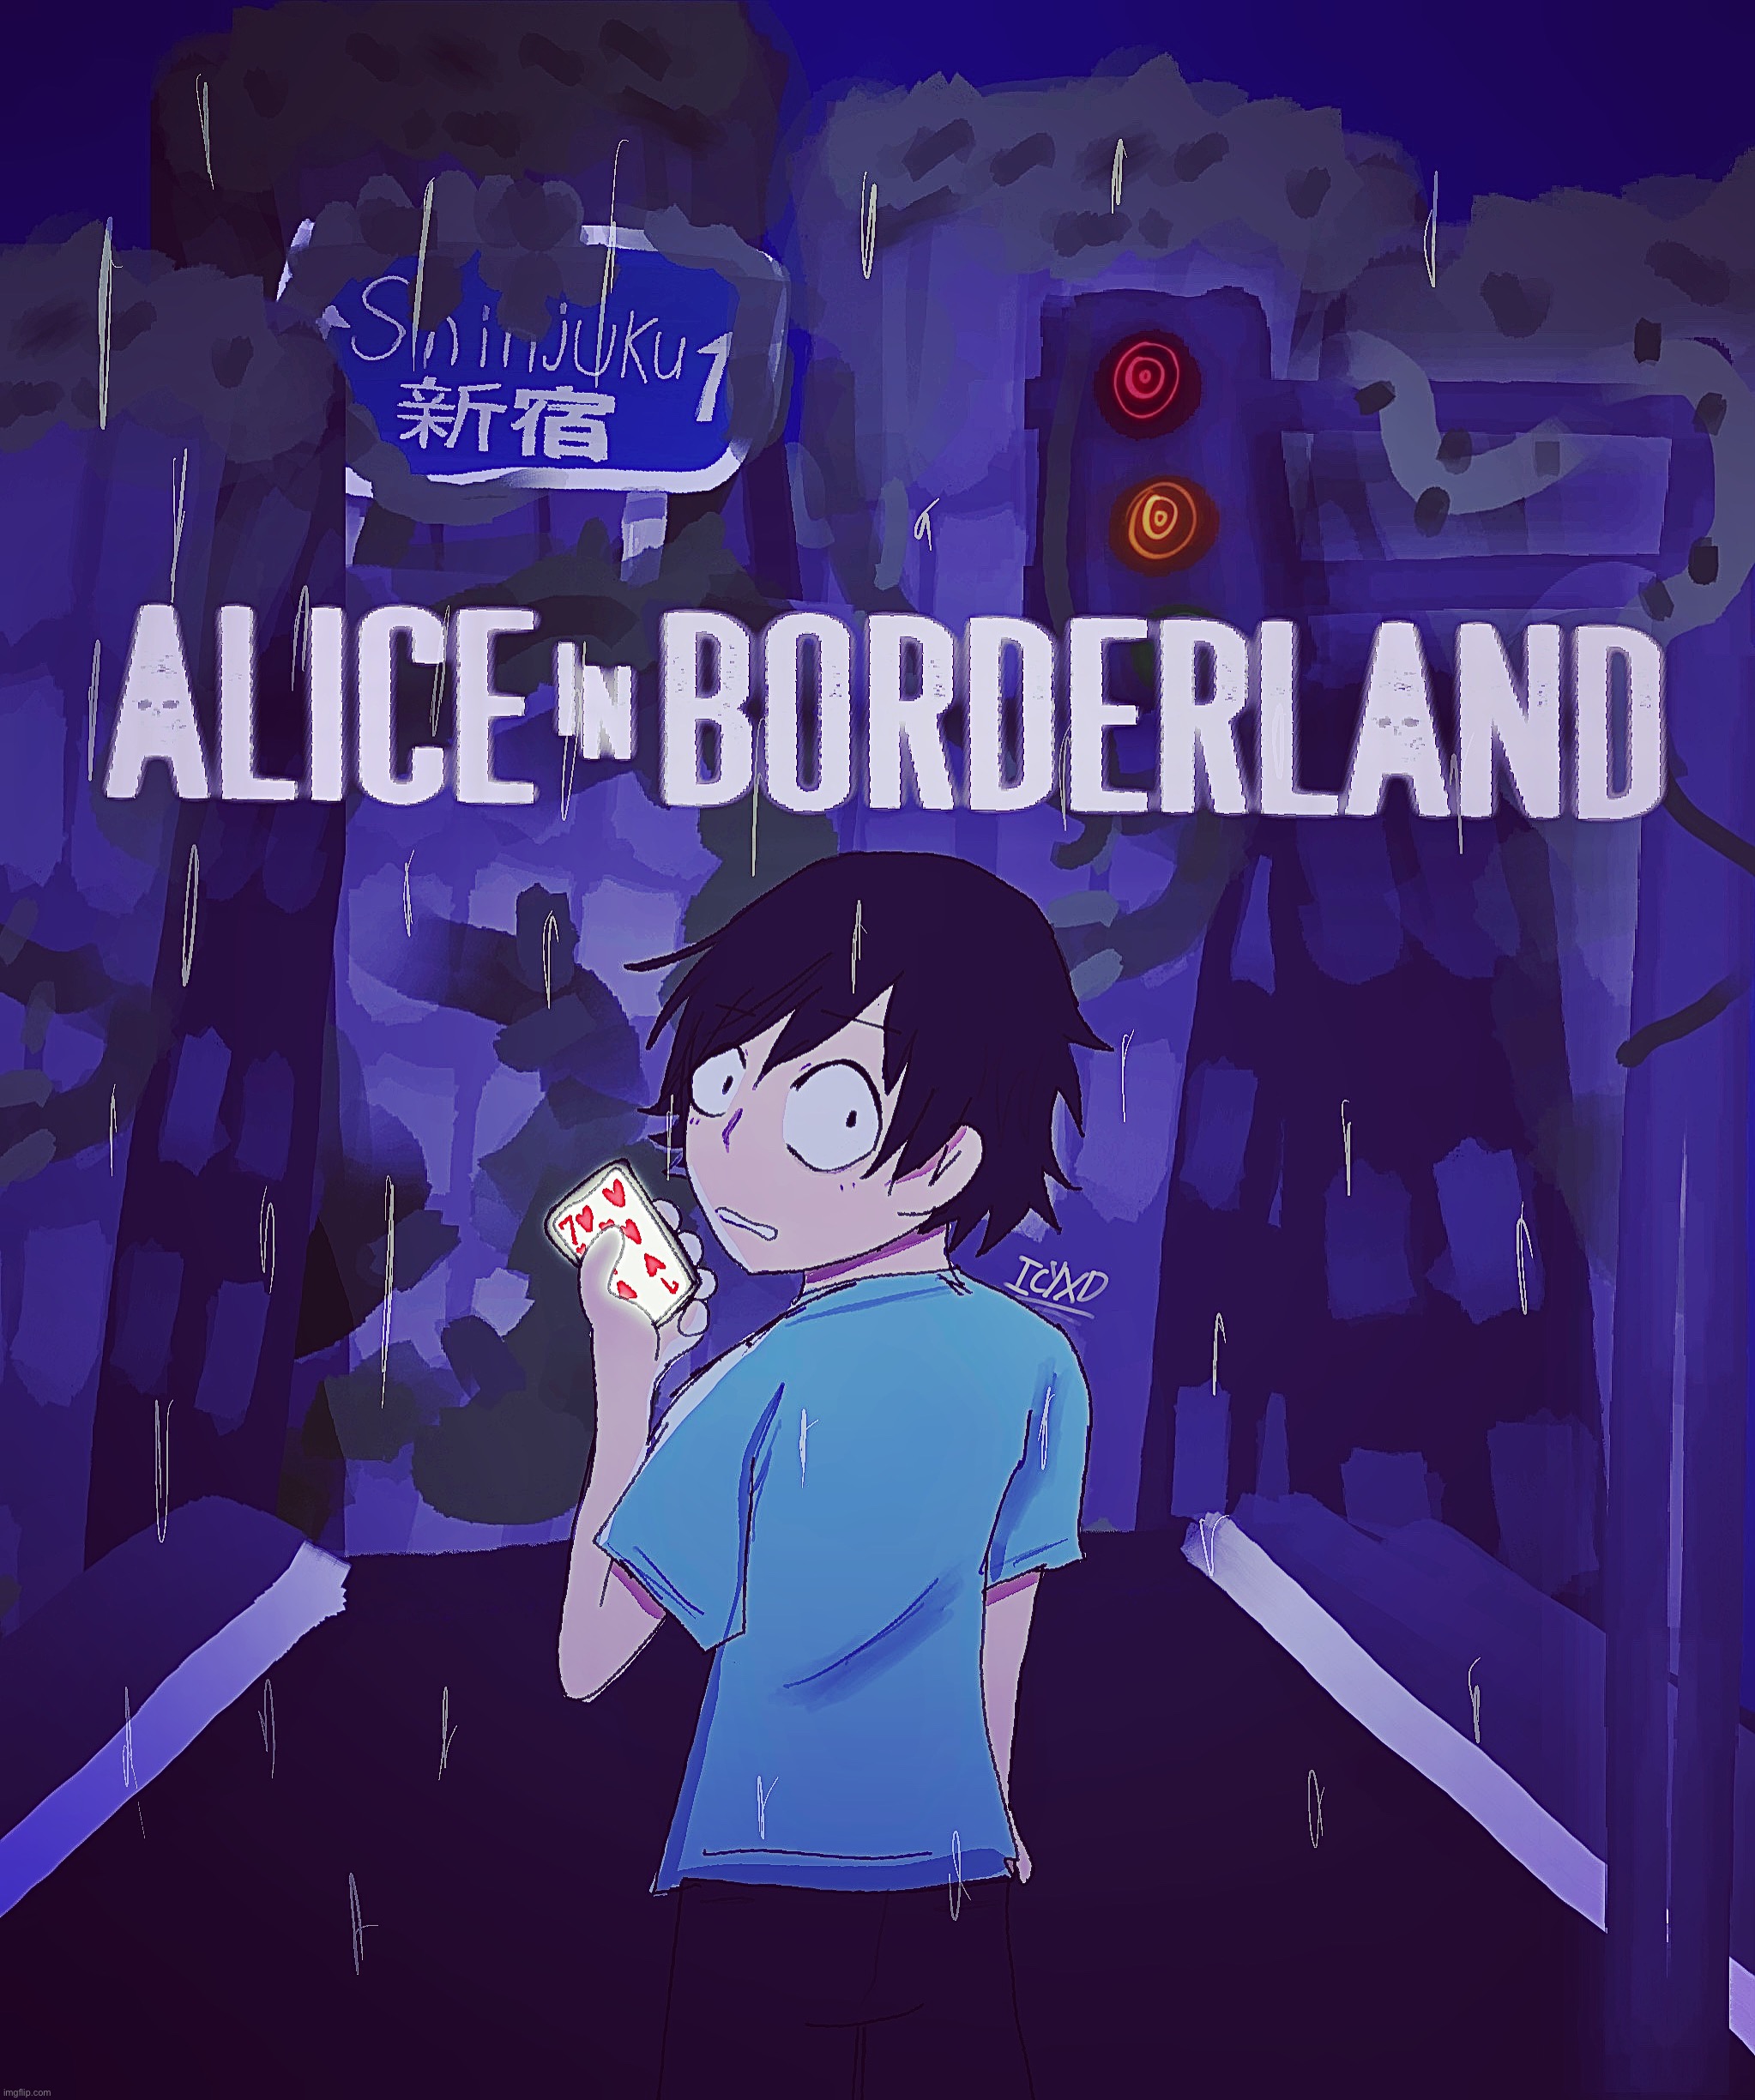 ALICE IN BORDERLAND. | image tagged in alice in bordeland,anime,fanart | made w/ Imgflip meme maker